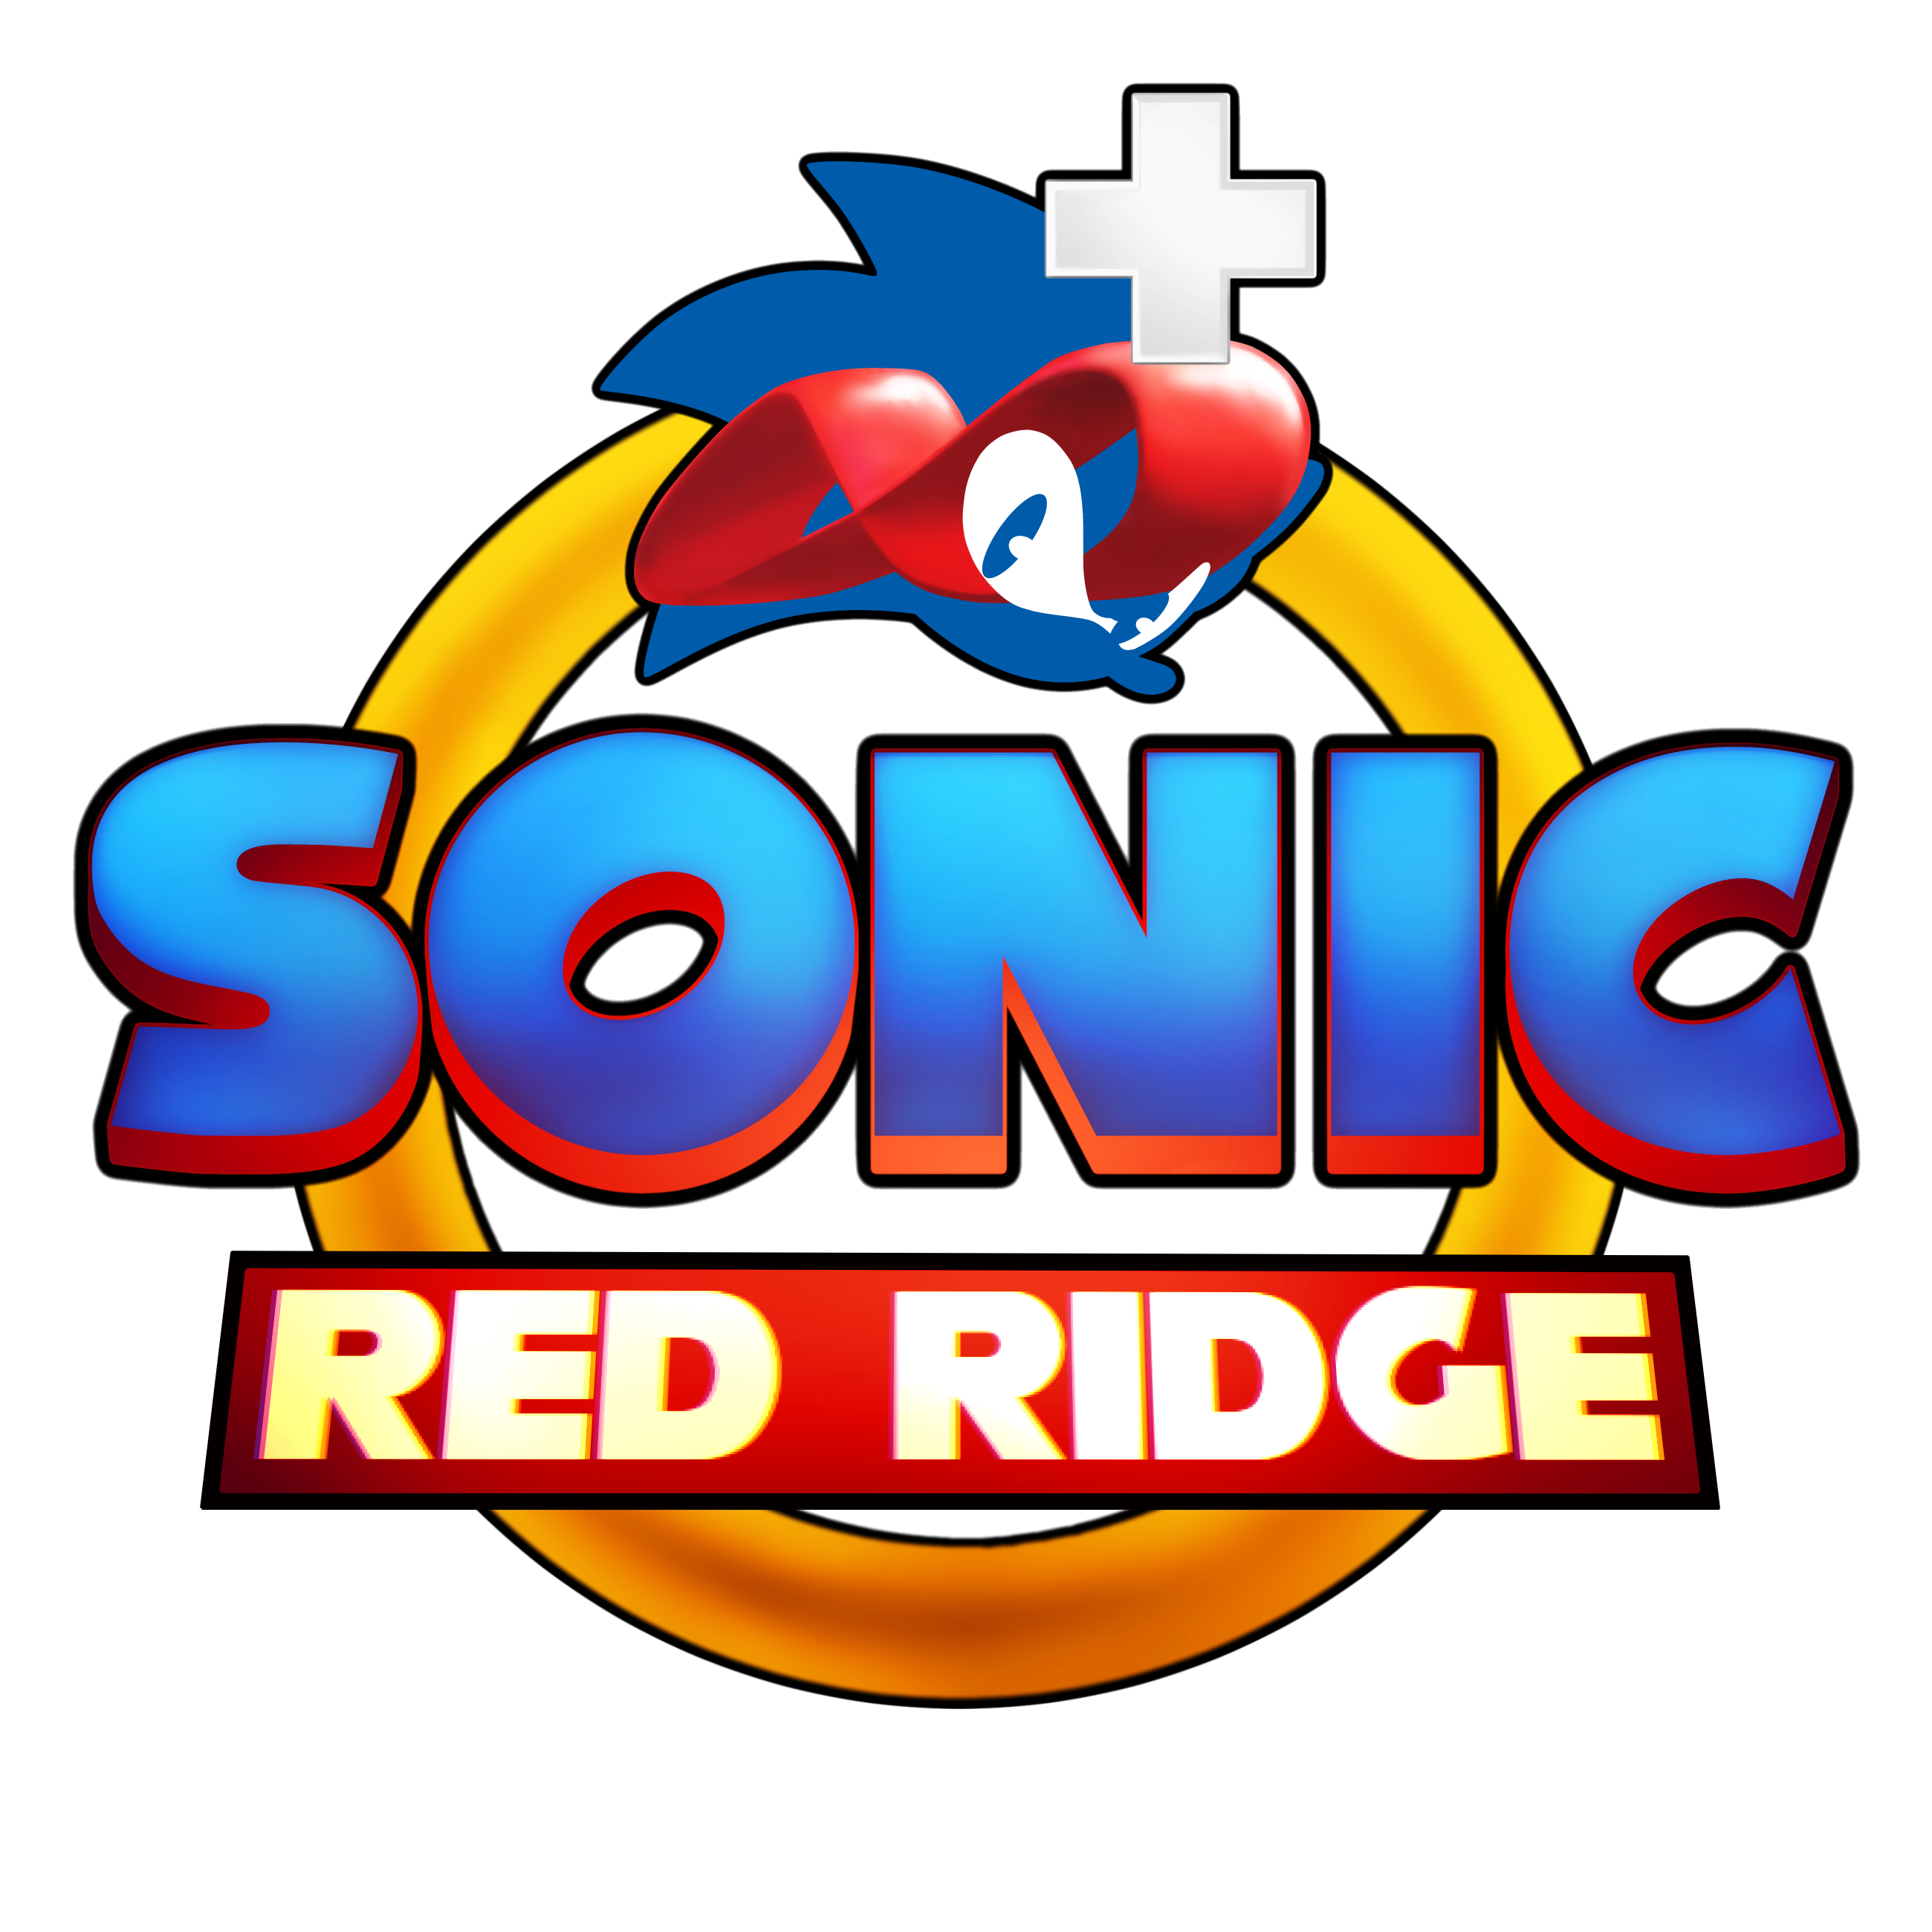 red ridge logo.png